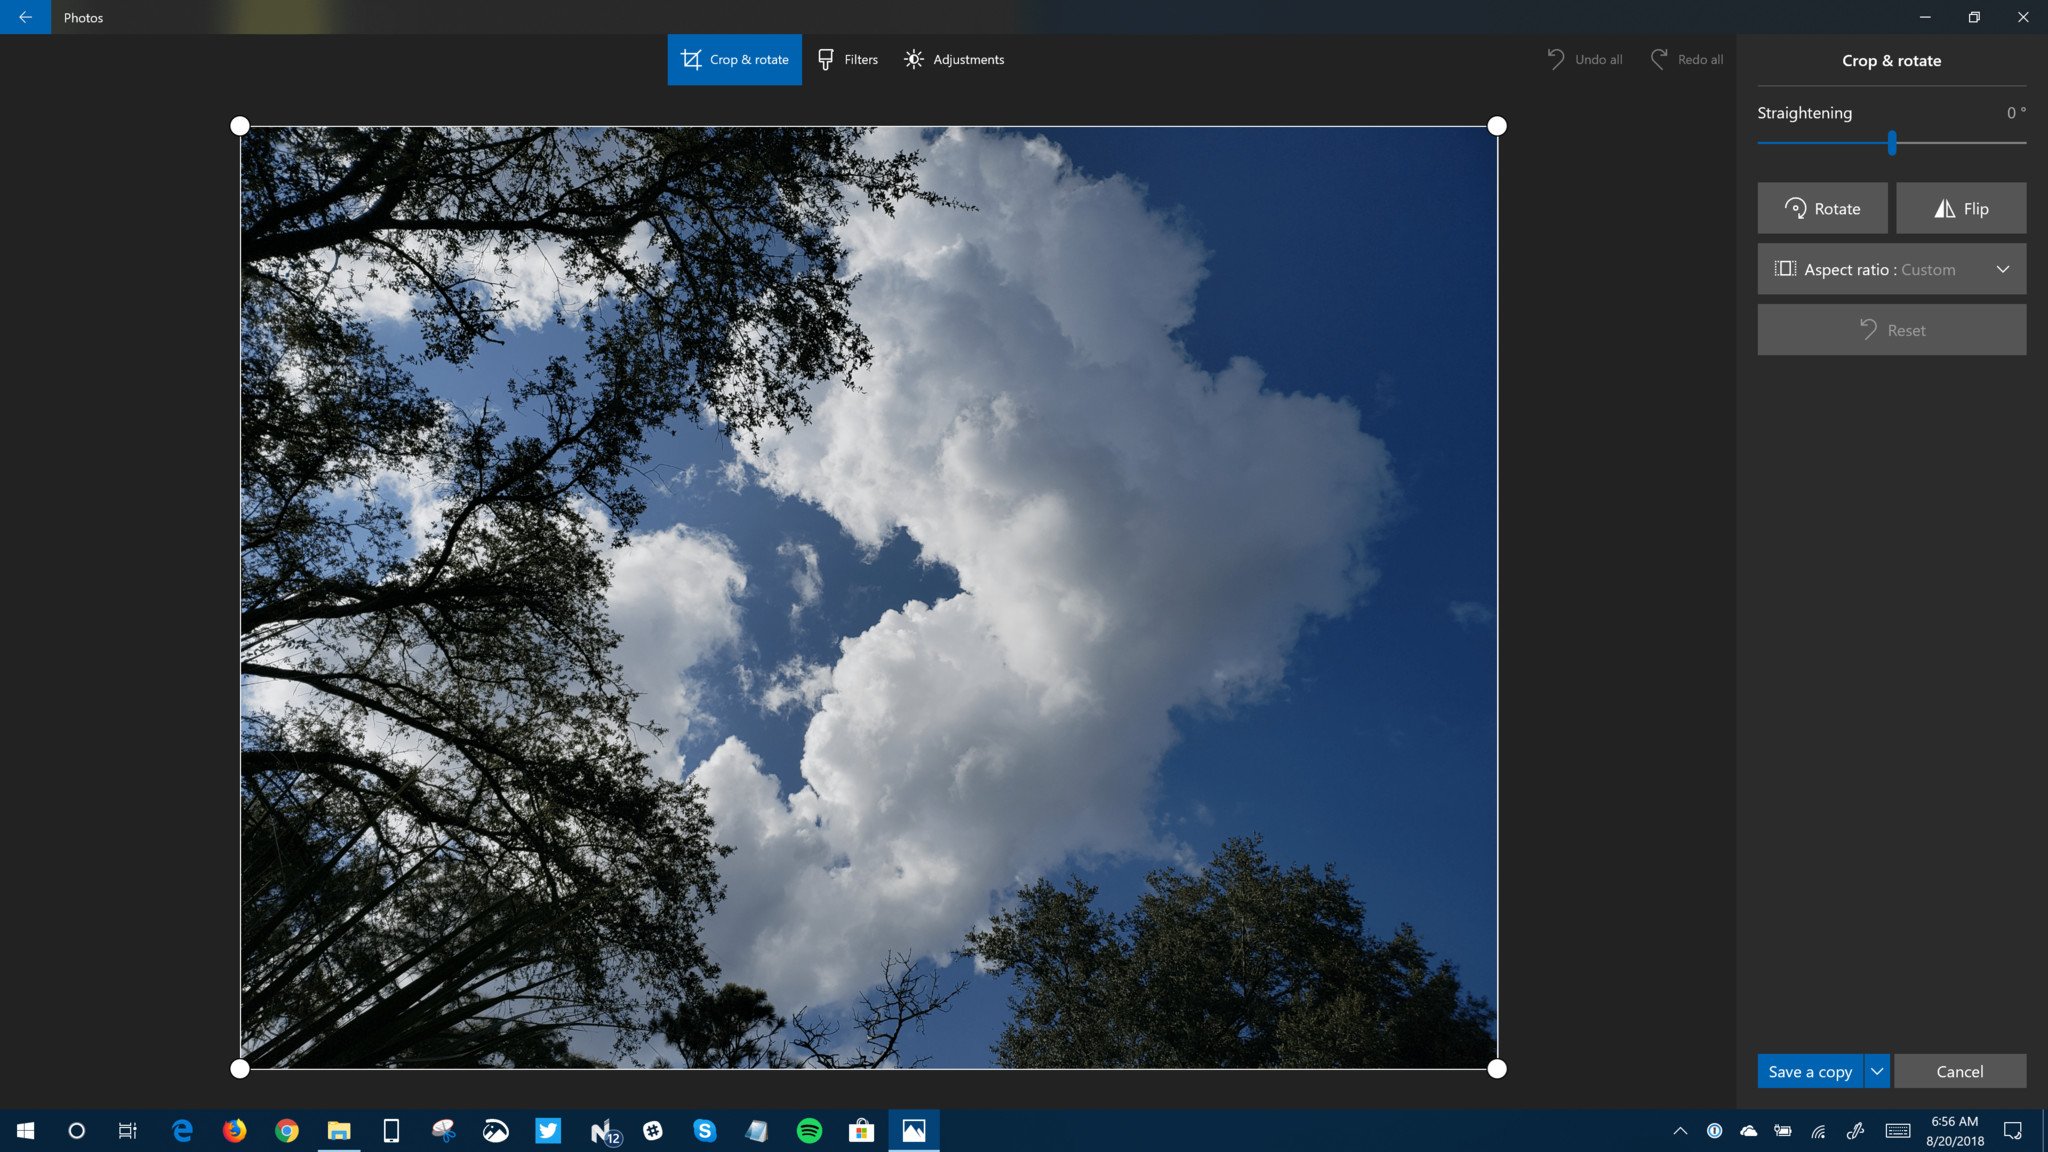 Windows 10 Photos app testing tweaked editing UI with Insiders